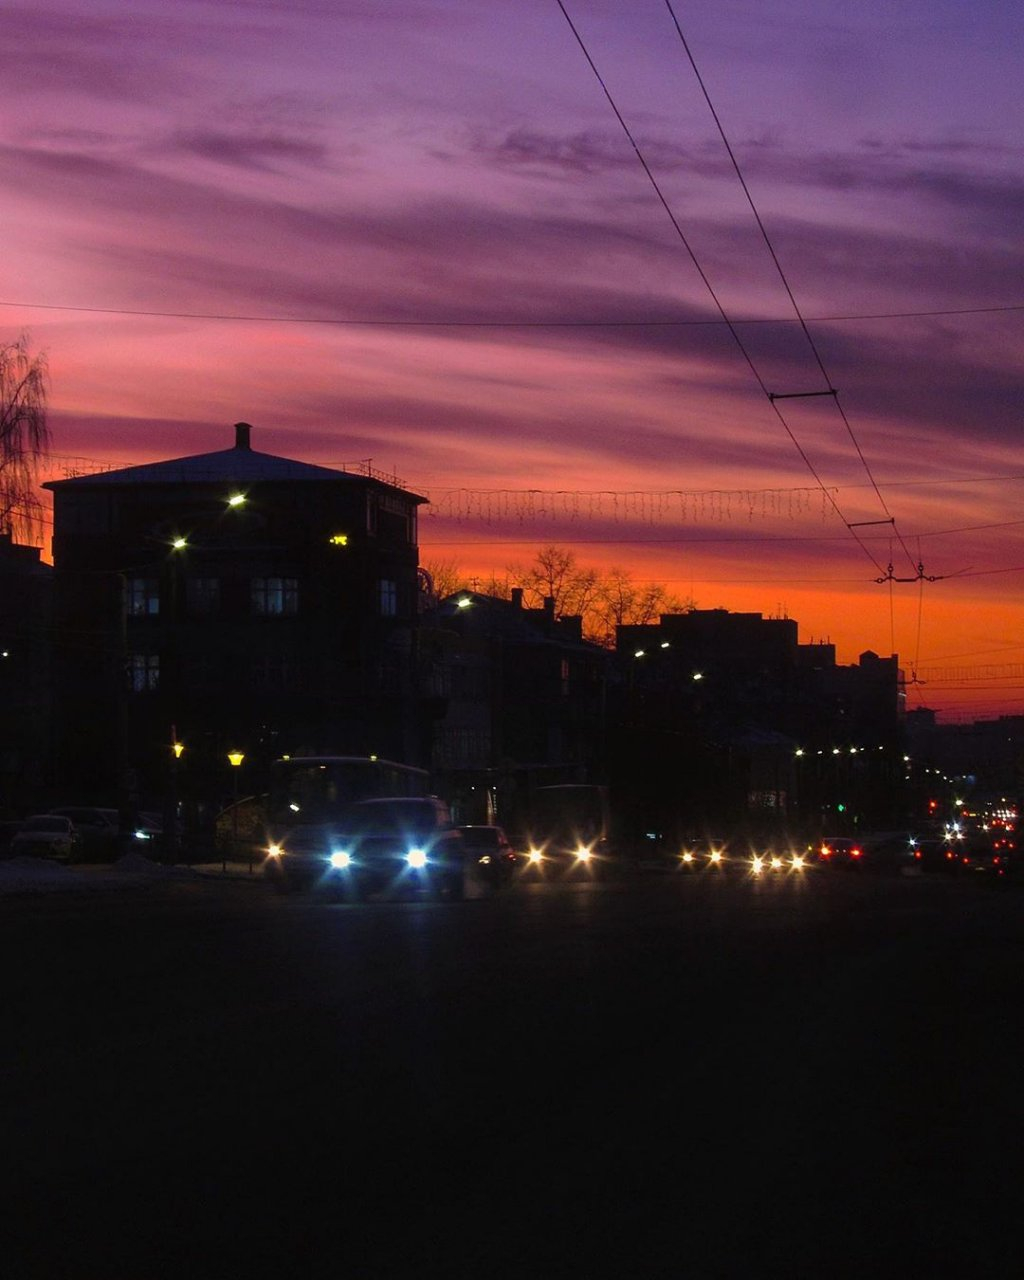 Фоторепортаж из Instagram: 10 захватывающих фото и 1 видео заката в Кирове